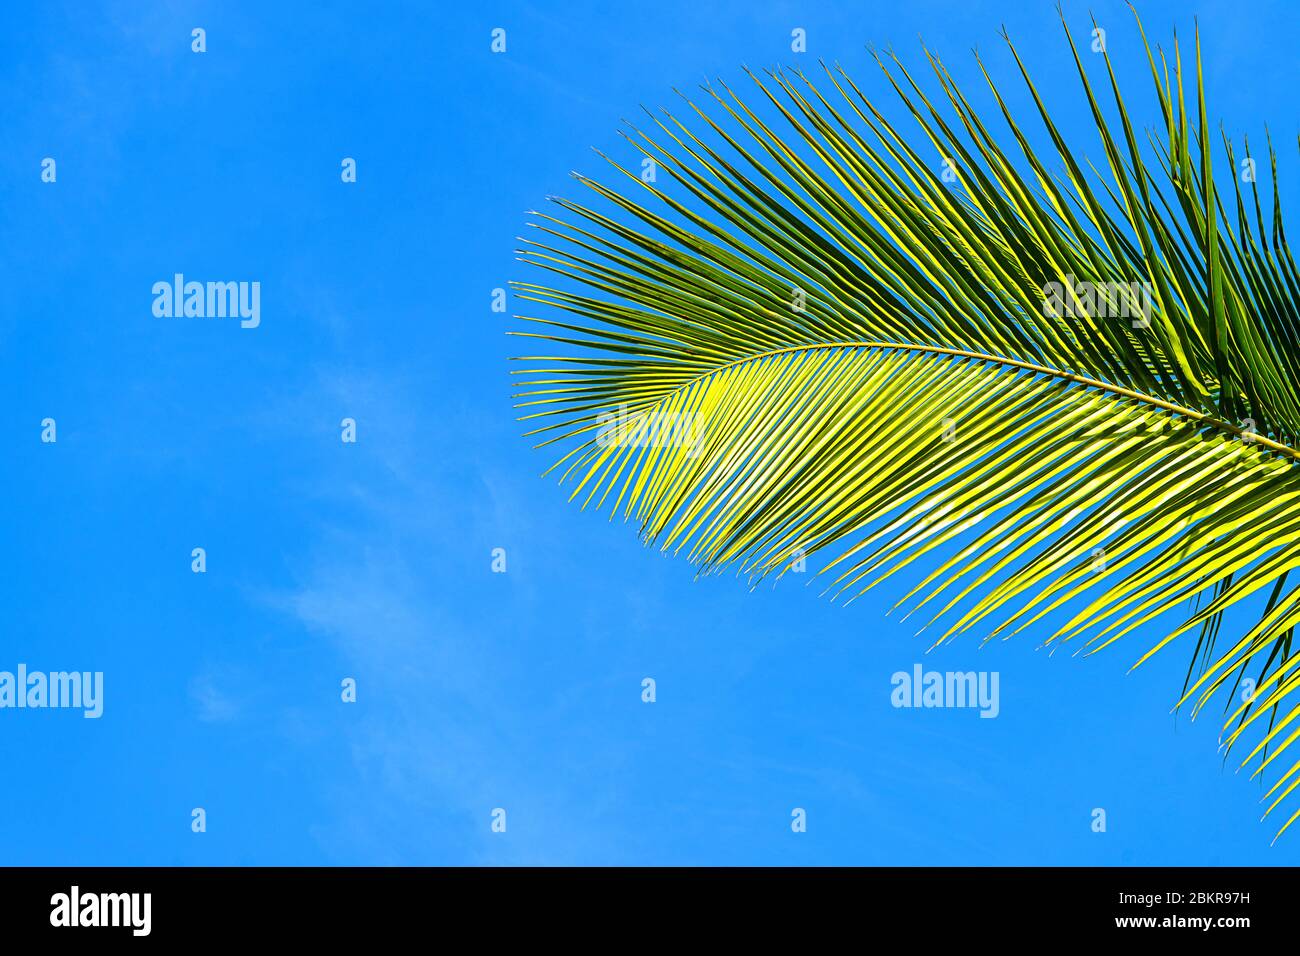 Kokospalmen schöner tropischer Hintergrund, Insel Sansibar, Afrika. Urlaubskonzept. Stockfoto